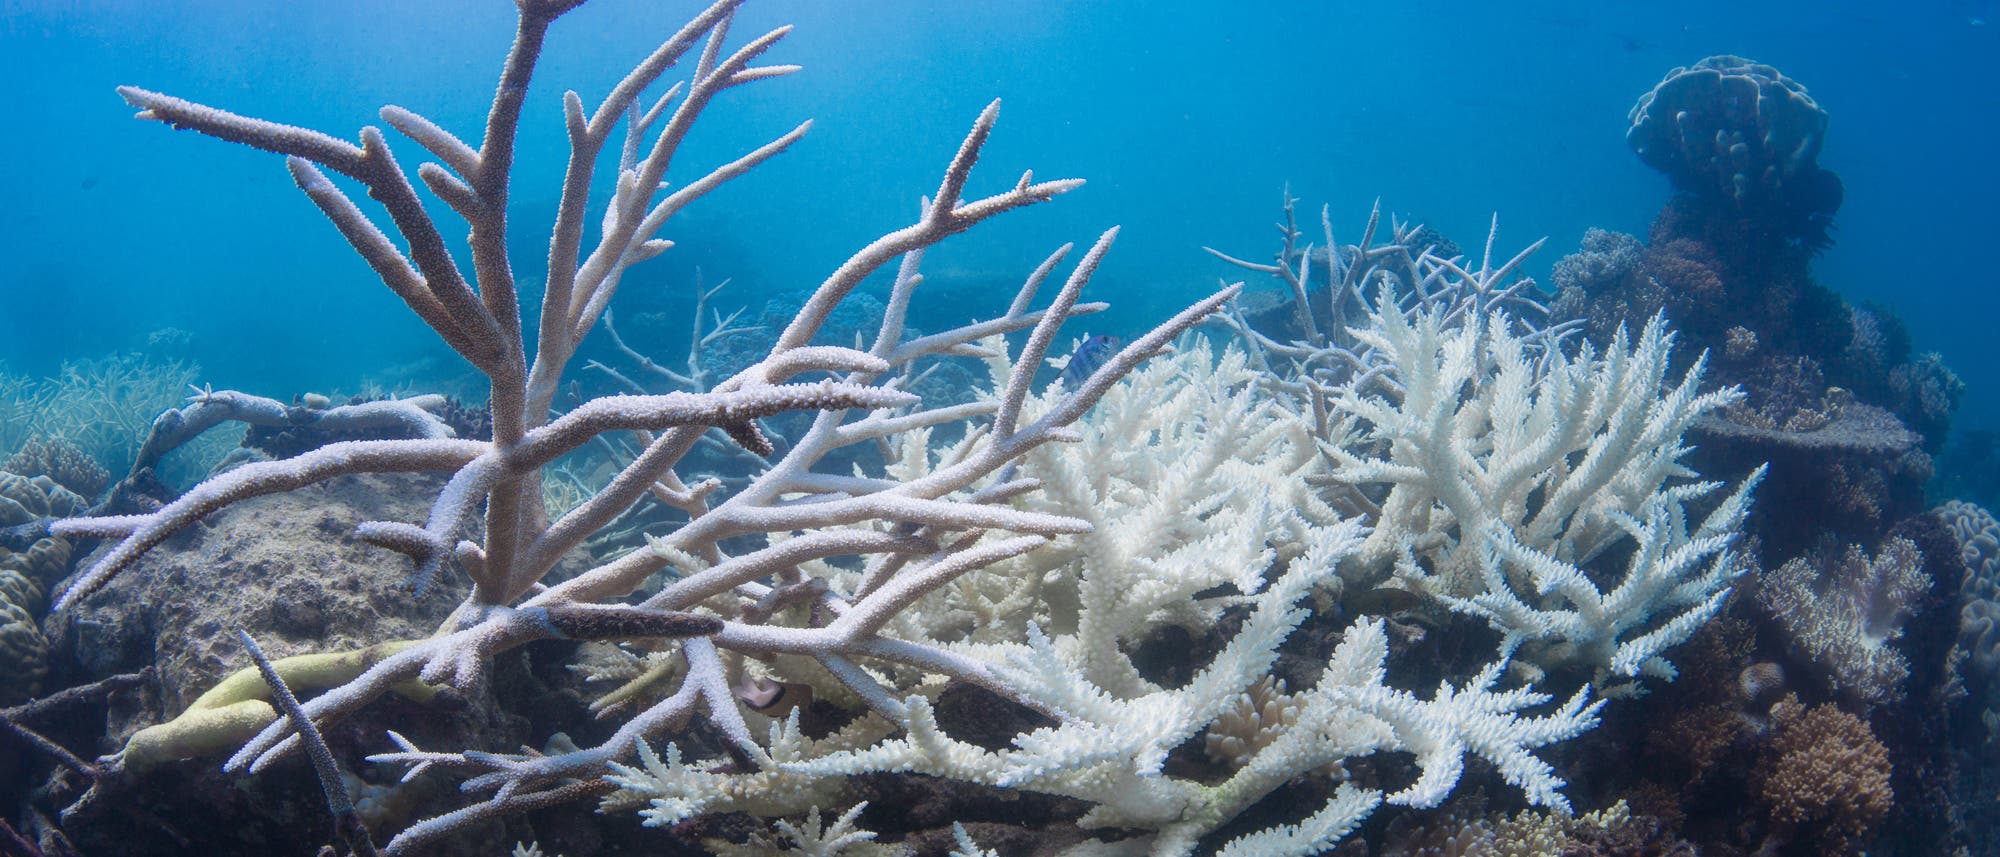 Ausgebleichte Korallen am Great Barrier Reef.  Bei Korallen ist es ähnlich wie bei antiken Statuen: In strahlendem Weiß sehen sie auf den ersten Blick vielleicht hübsch aus – tatsächlich sind sie aber ein Zeichen des Verfalls.